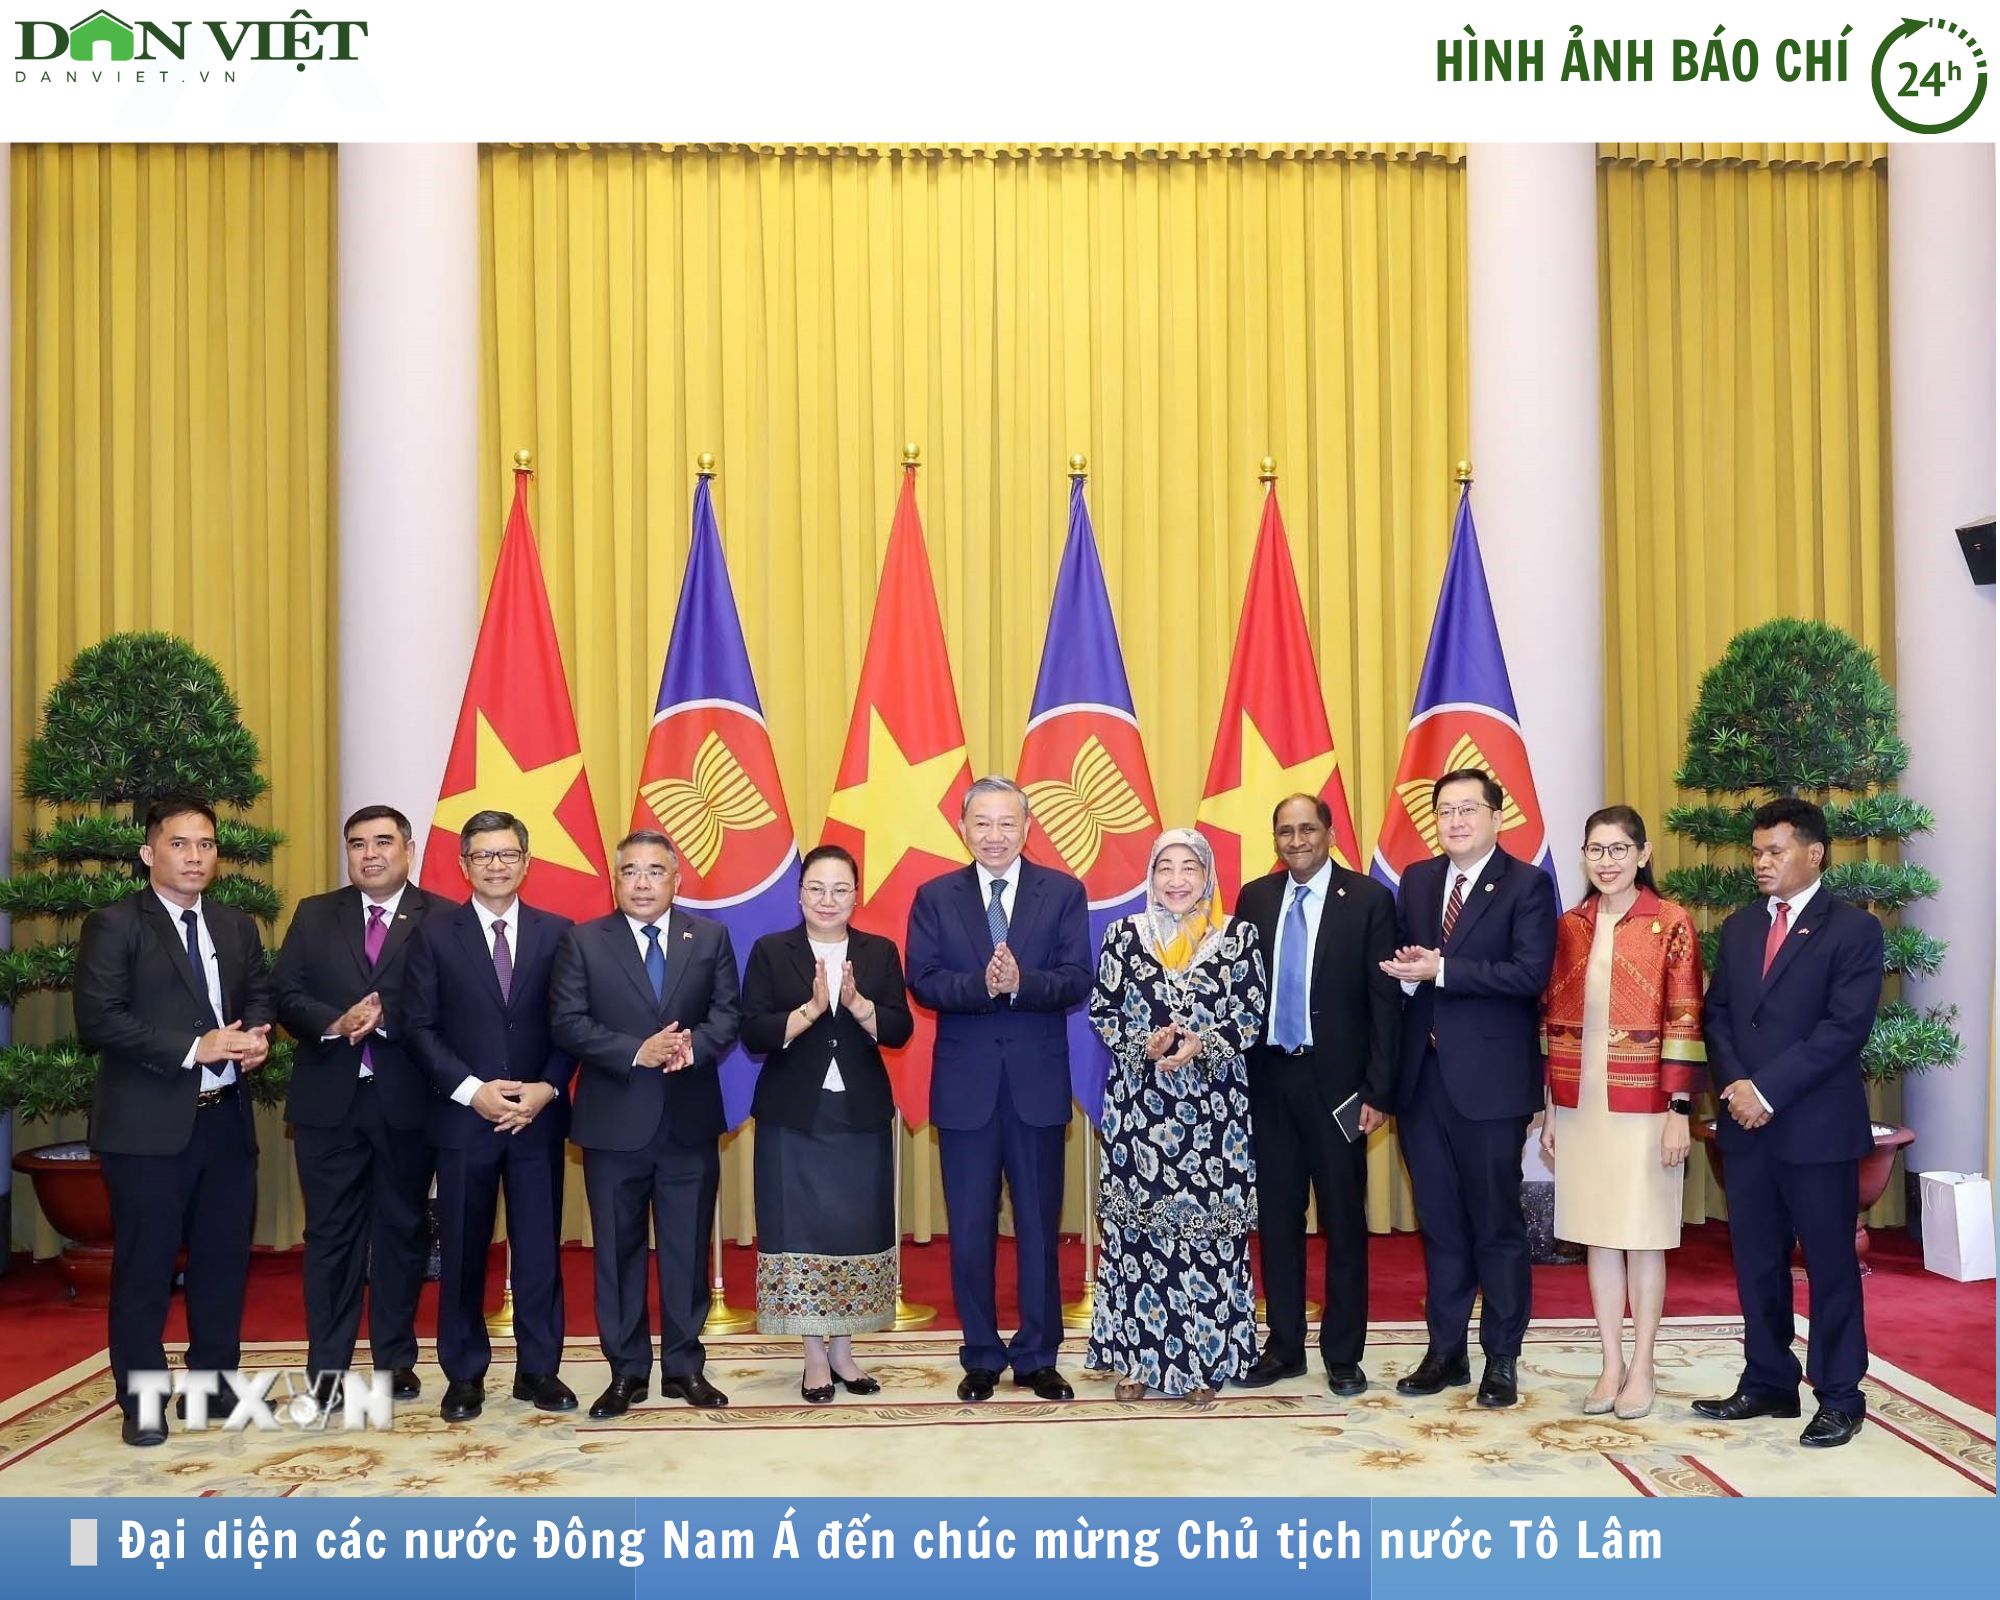 Hình ảnh báo chí 24h: Đại diện các nước Đông Nam Á đến chúc mừng Chủ tịch nước Tô Lâm- Ảnh 1.